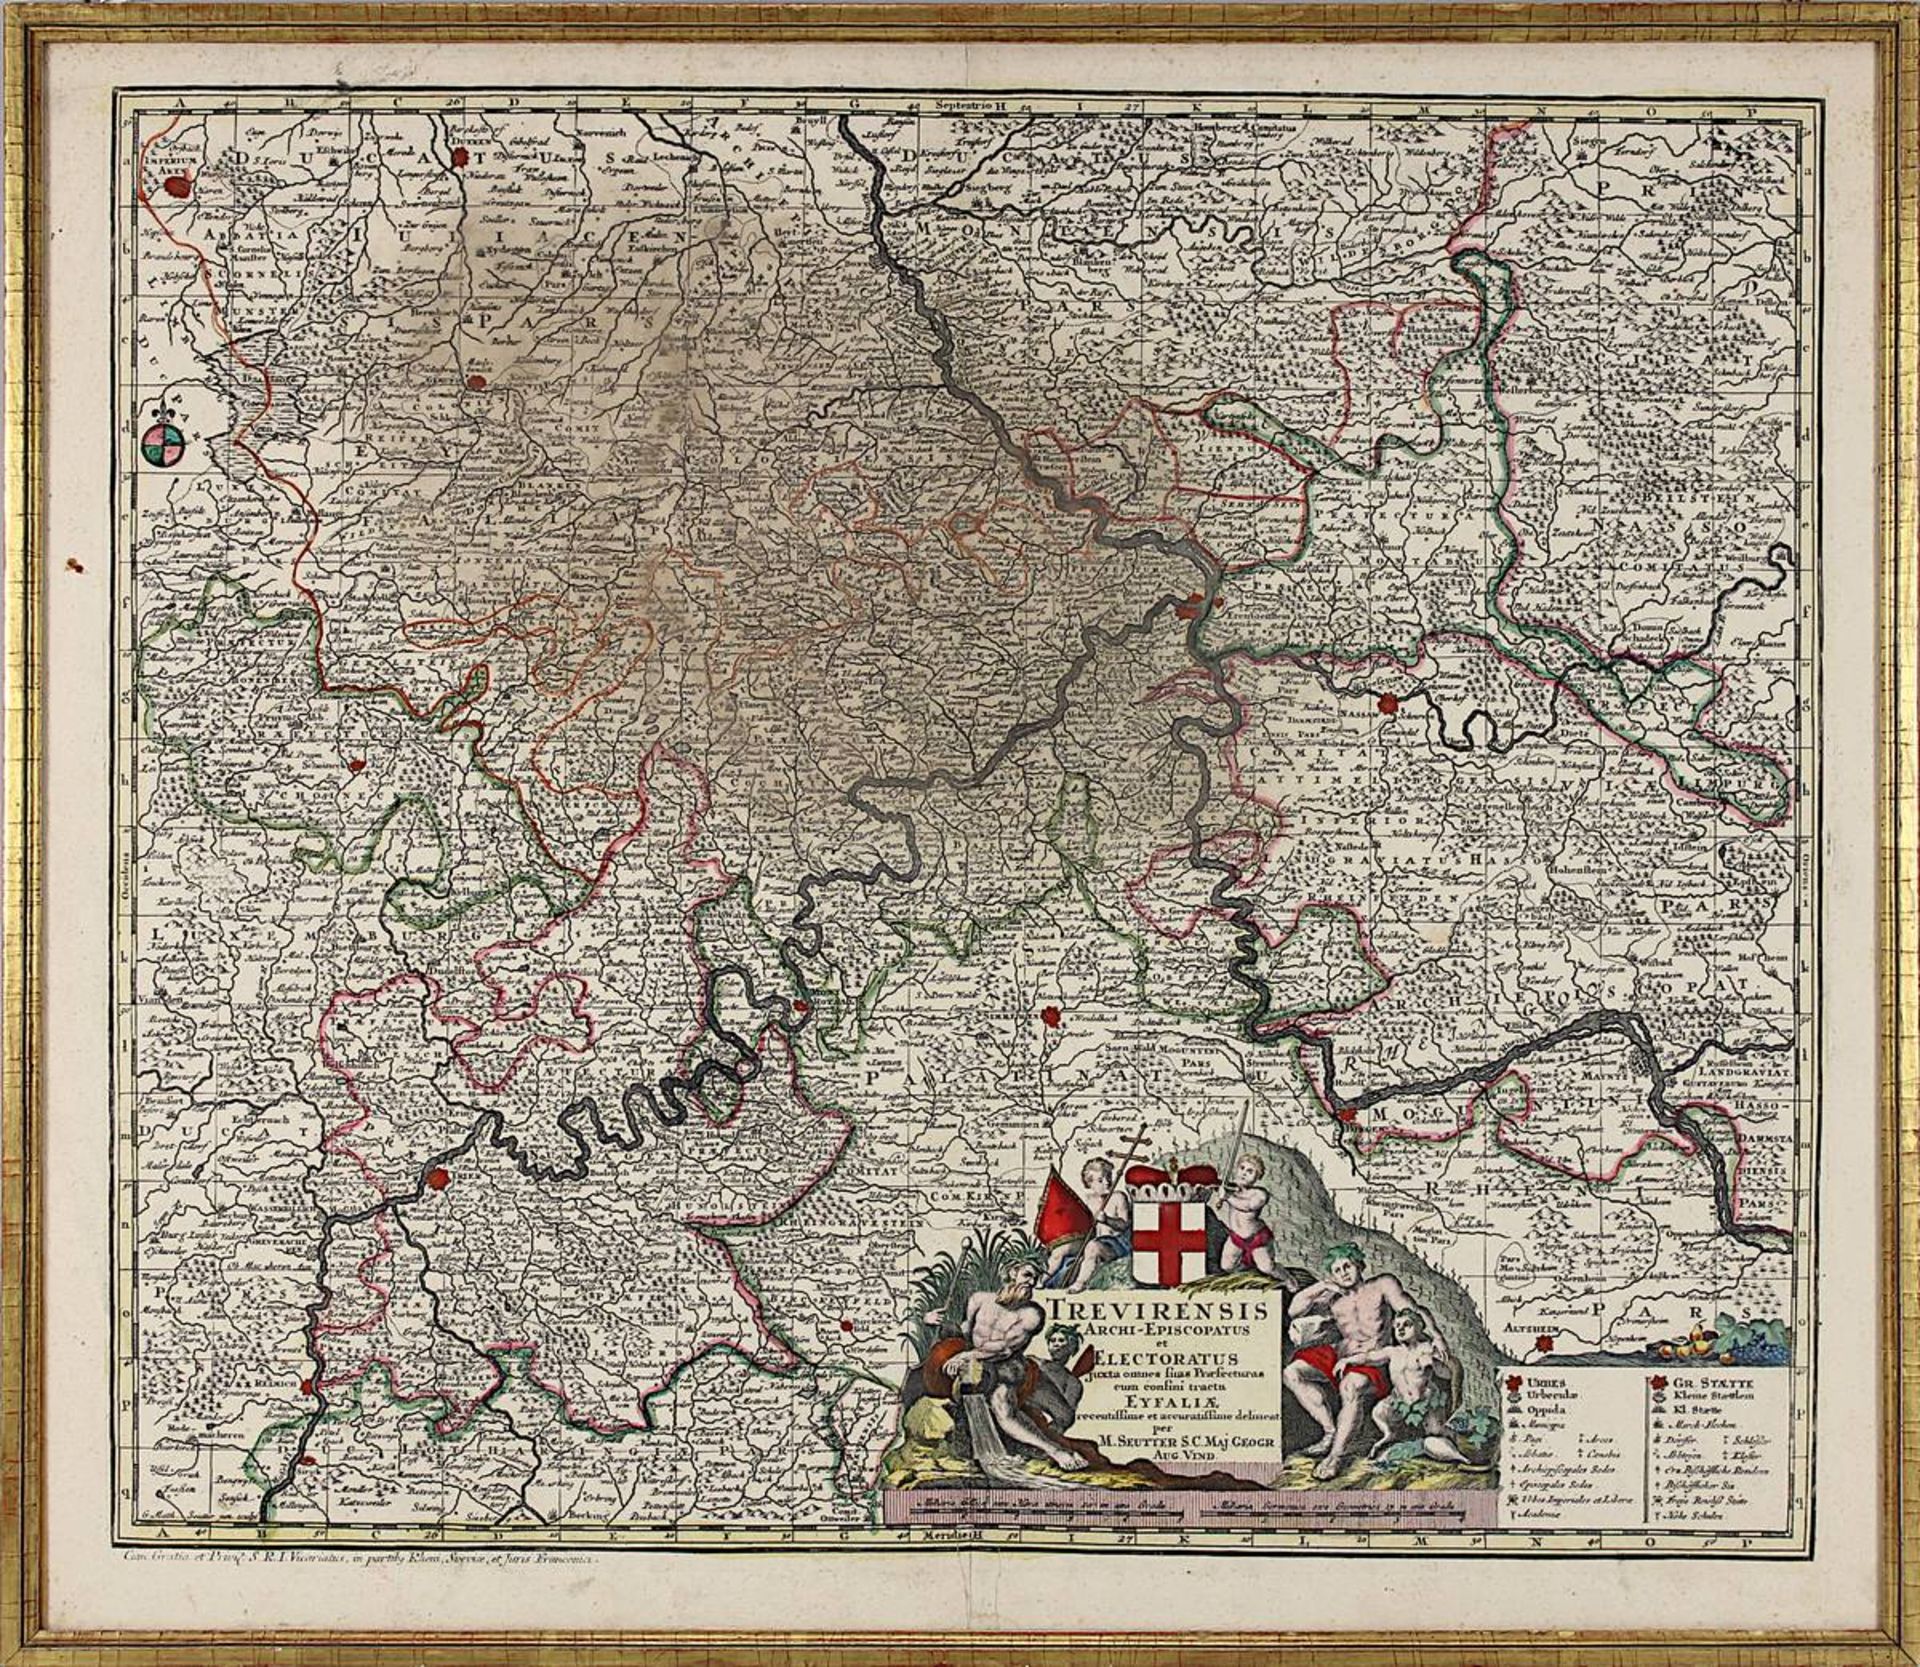 "Trevirensis Archi - Episcopatus ...", kolorierte Kupferstichkarte, Augsburg M. 18. Jh., von